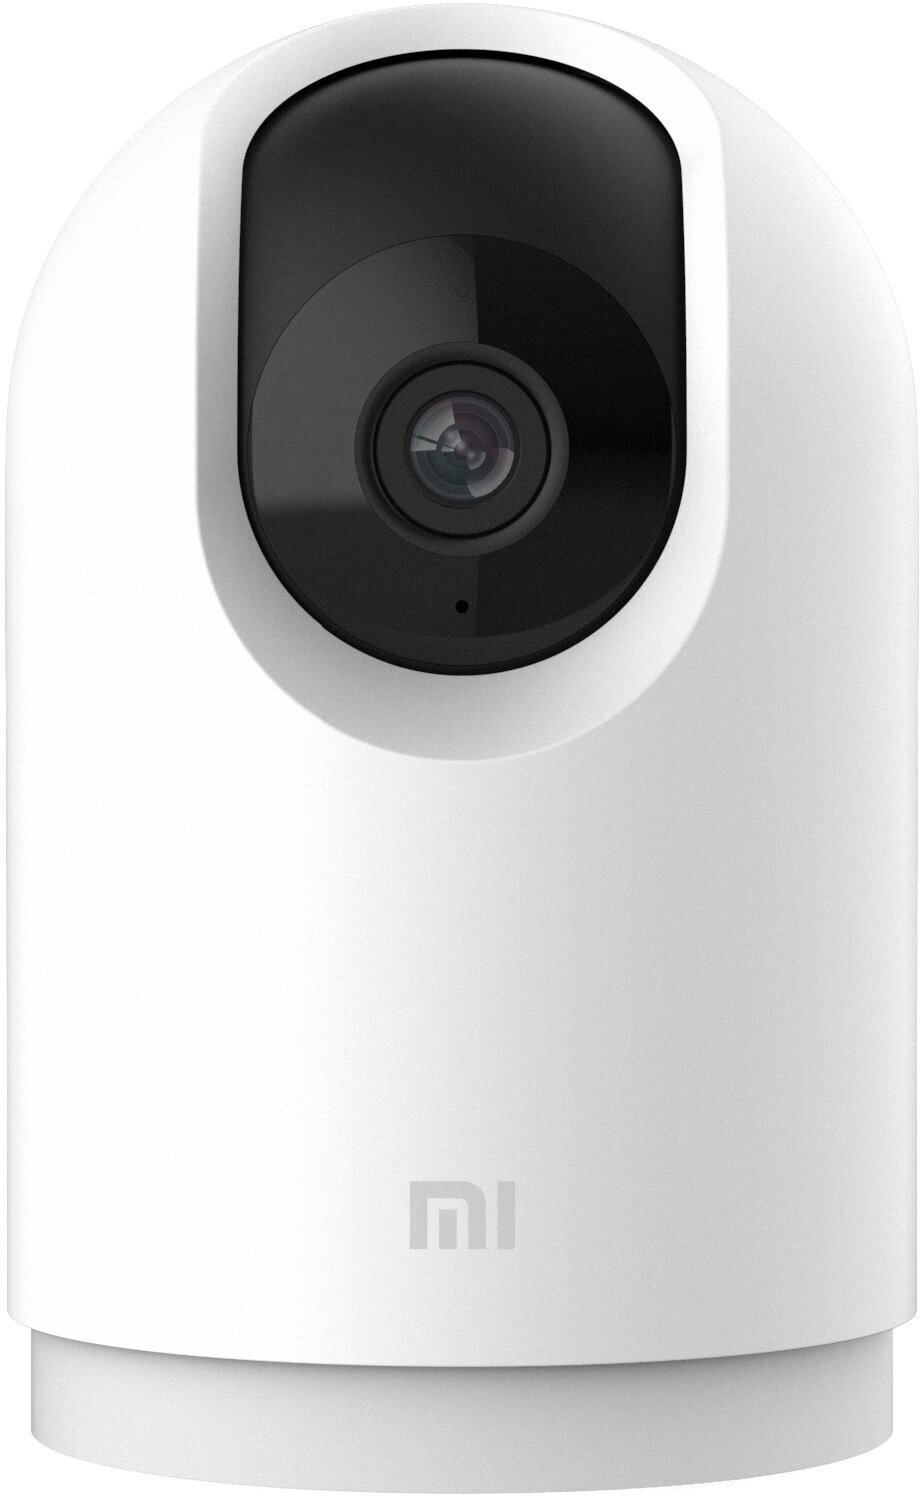 Видеокамера для видеонаблюдения MI 360° Home Security Camera 2K Pro - WiFi IP камера (BHR4193GL)